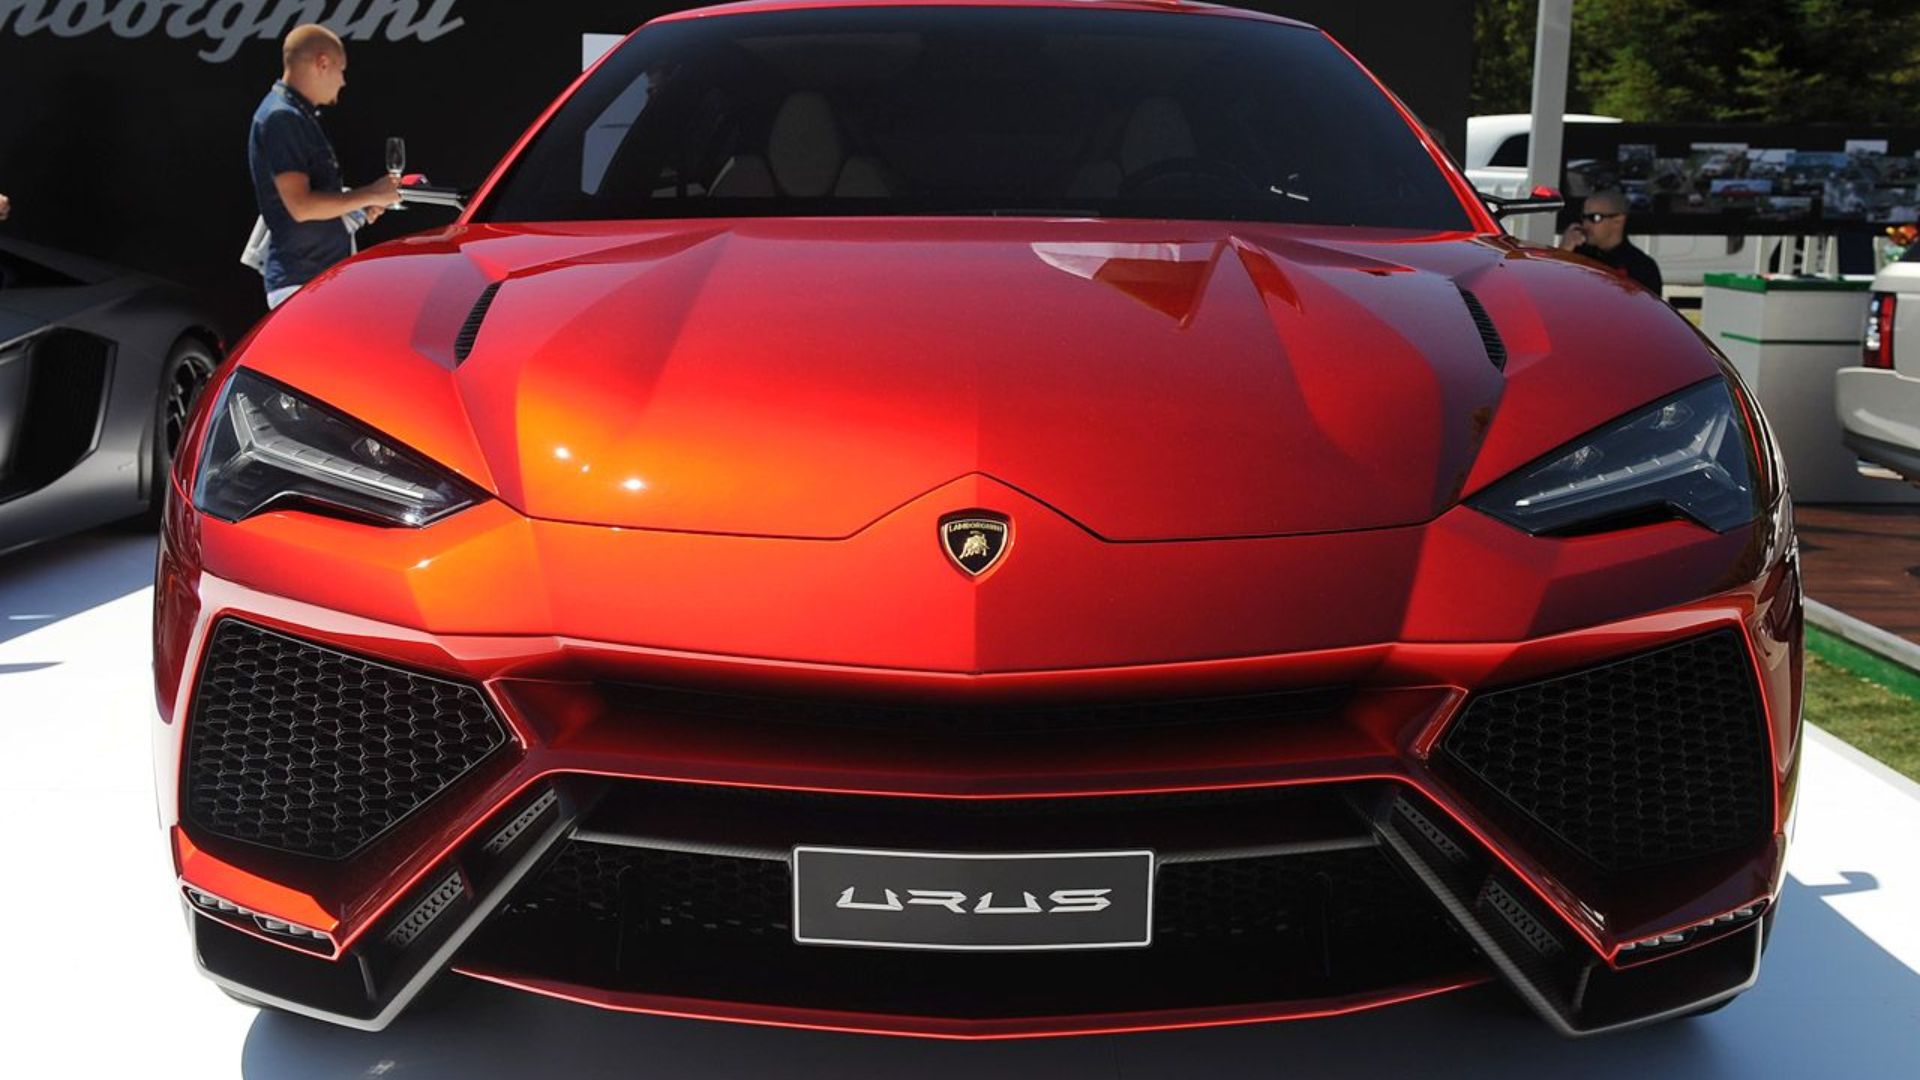 Bеforе Expеriеncing Dubai in a Lamborghini Urus 